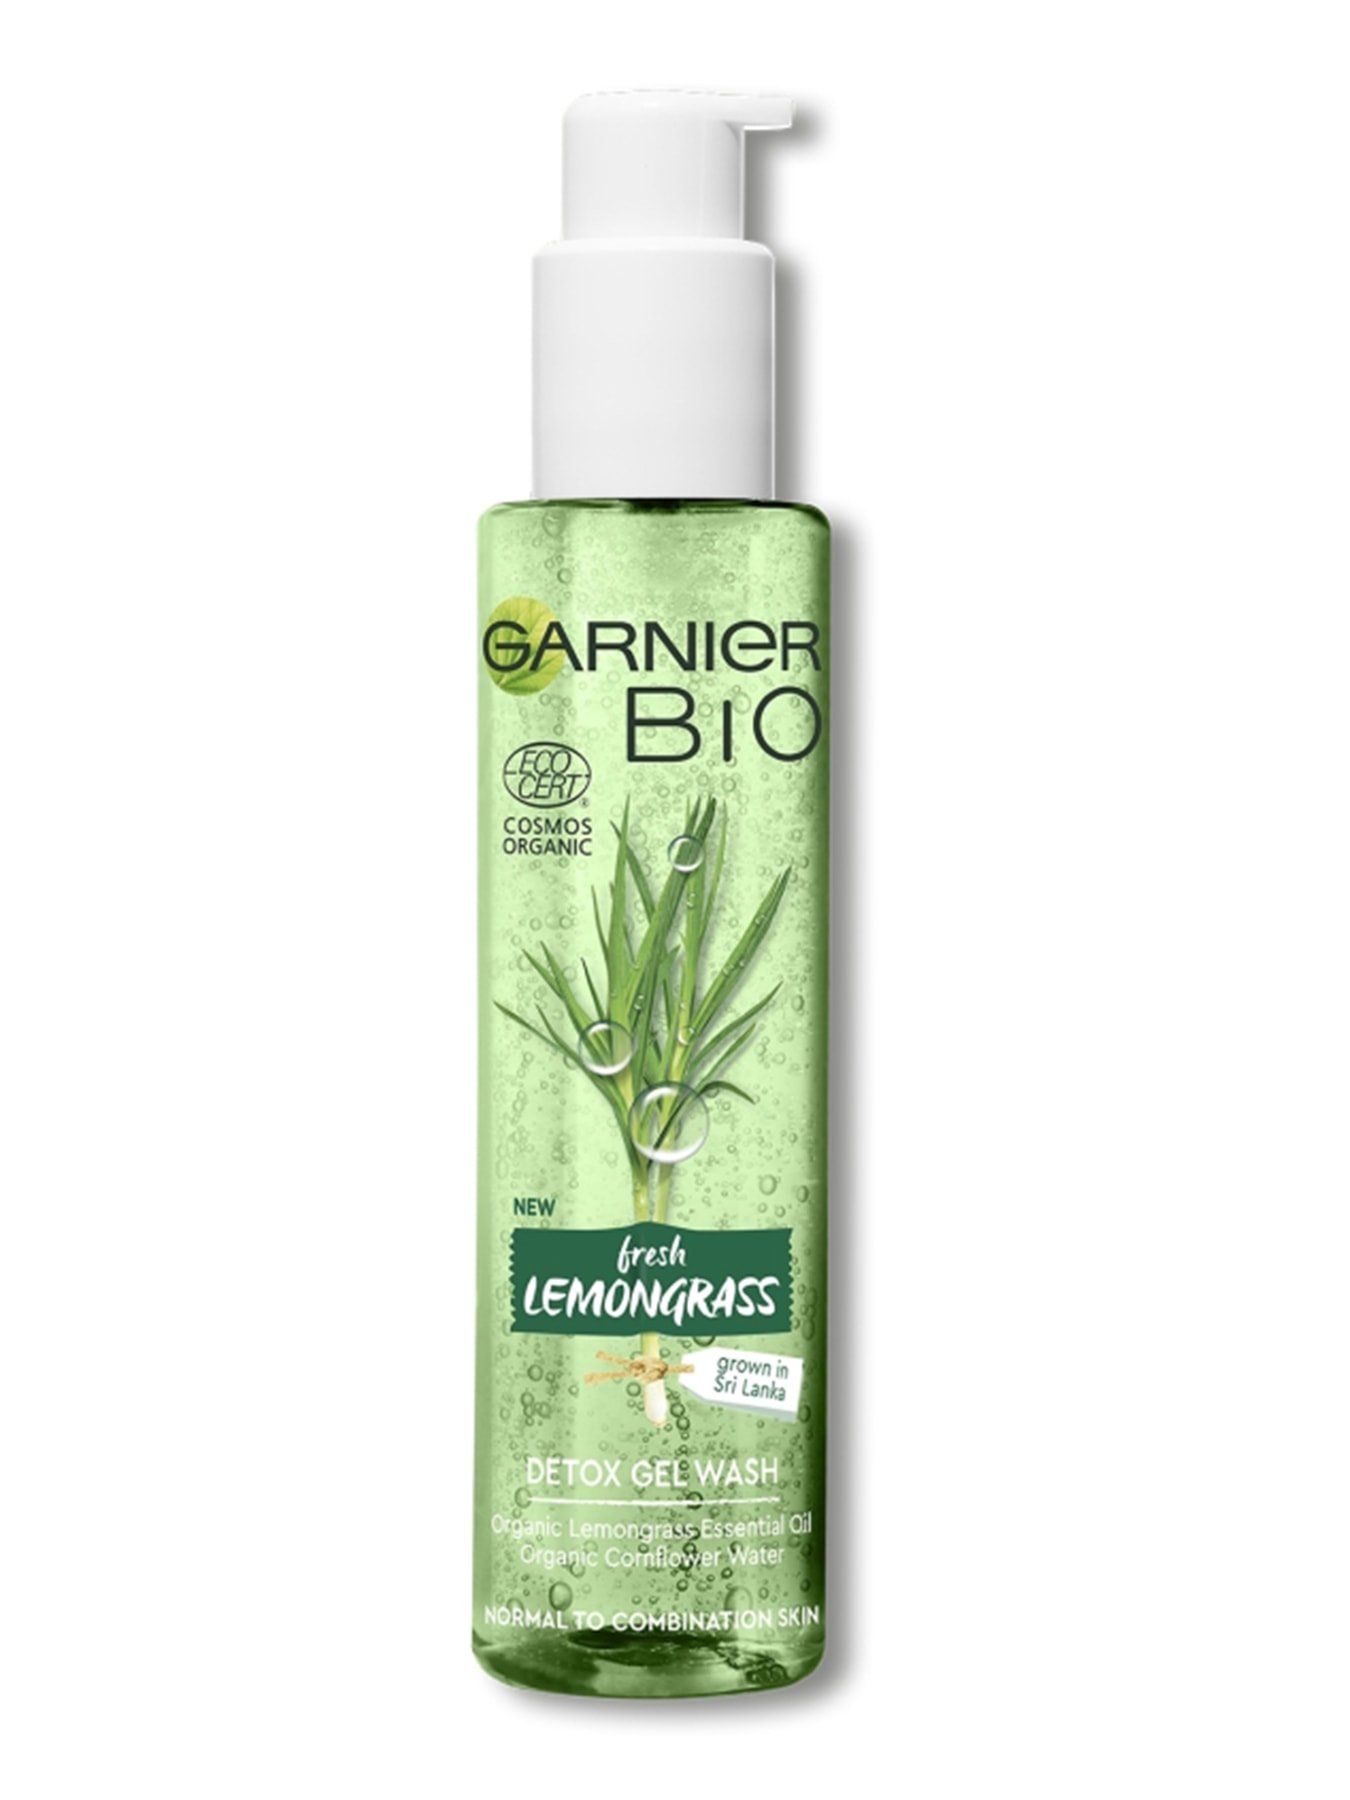 Garnier Bio Lemongrass razstrupitveni gel za čiščenje obraza, 